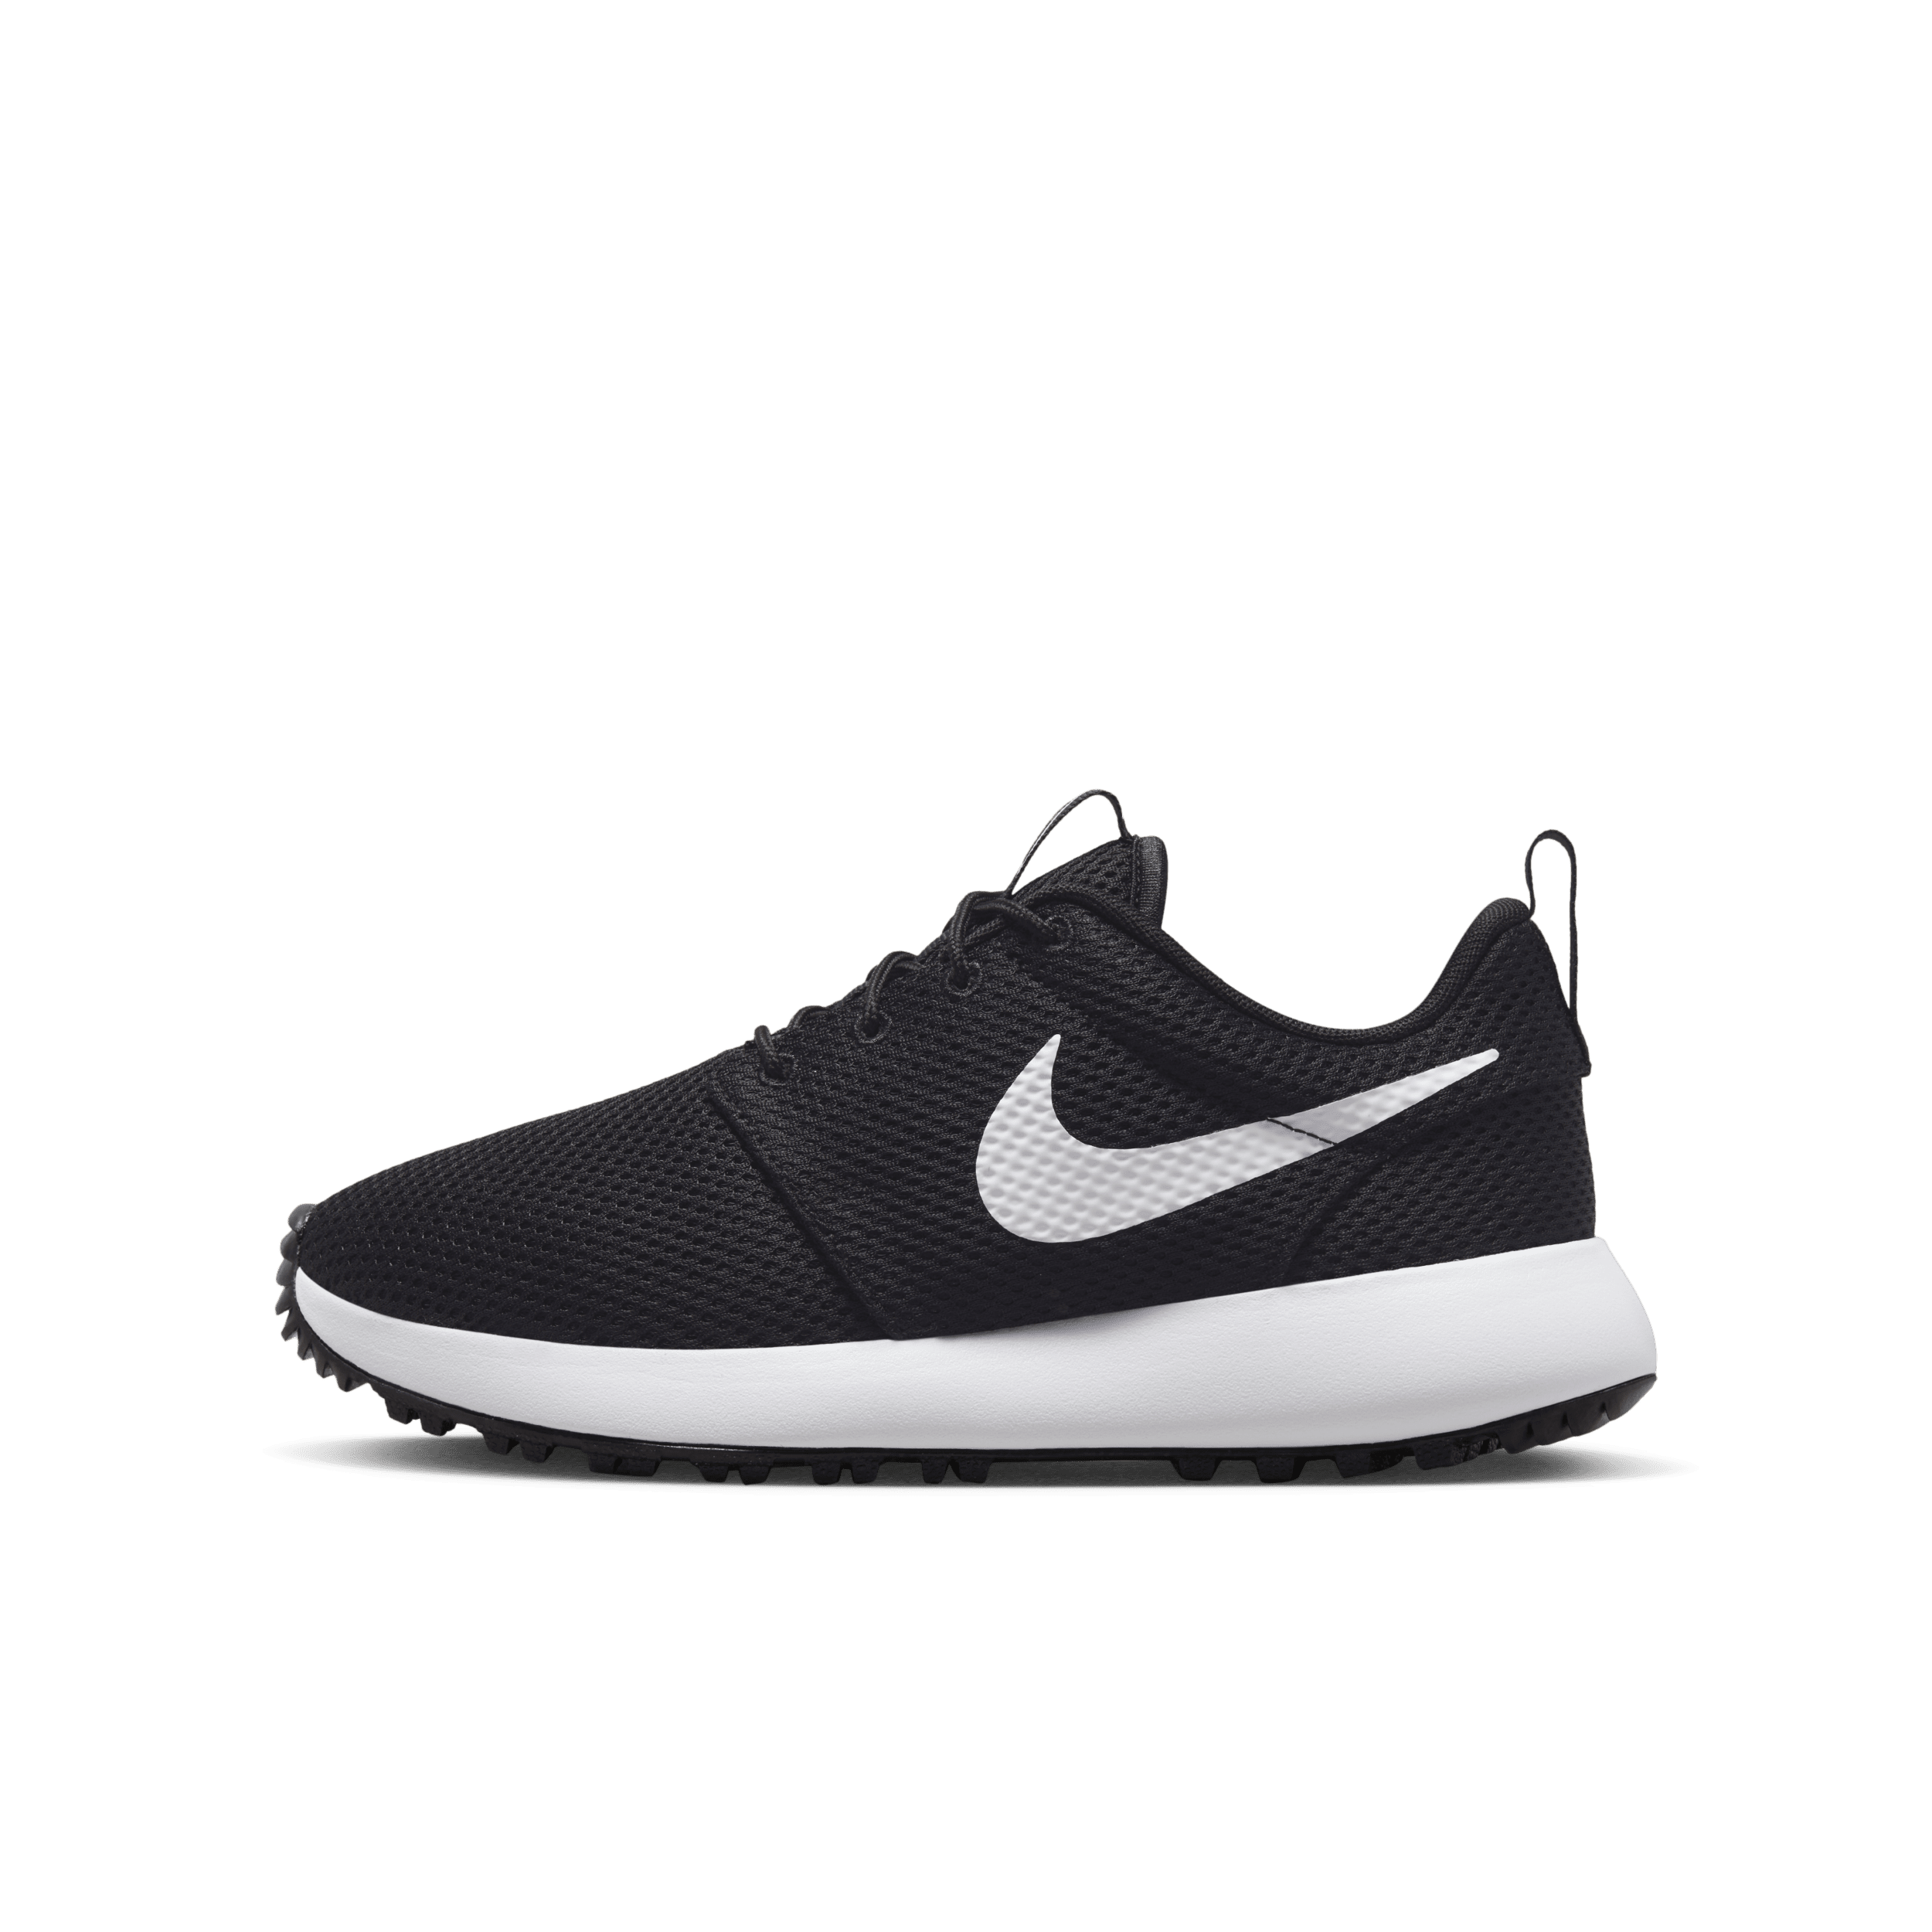 Nike Roshe 2 G Jr. Zapatillas de golf - Niño/a y niño/a pequeño/a - Negro